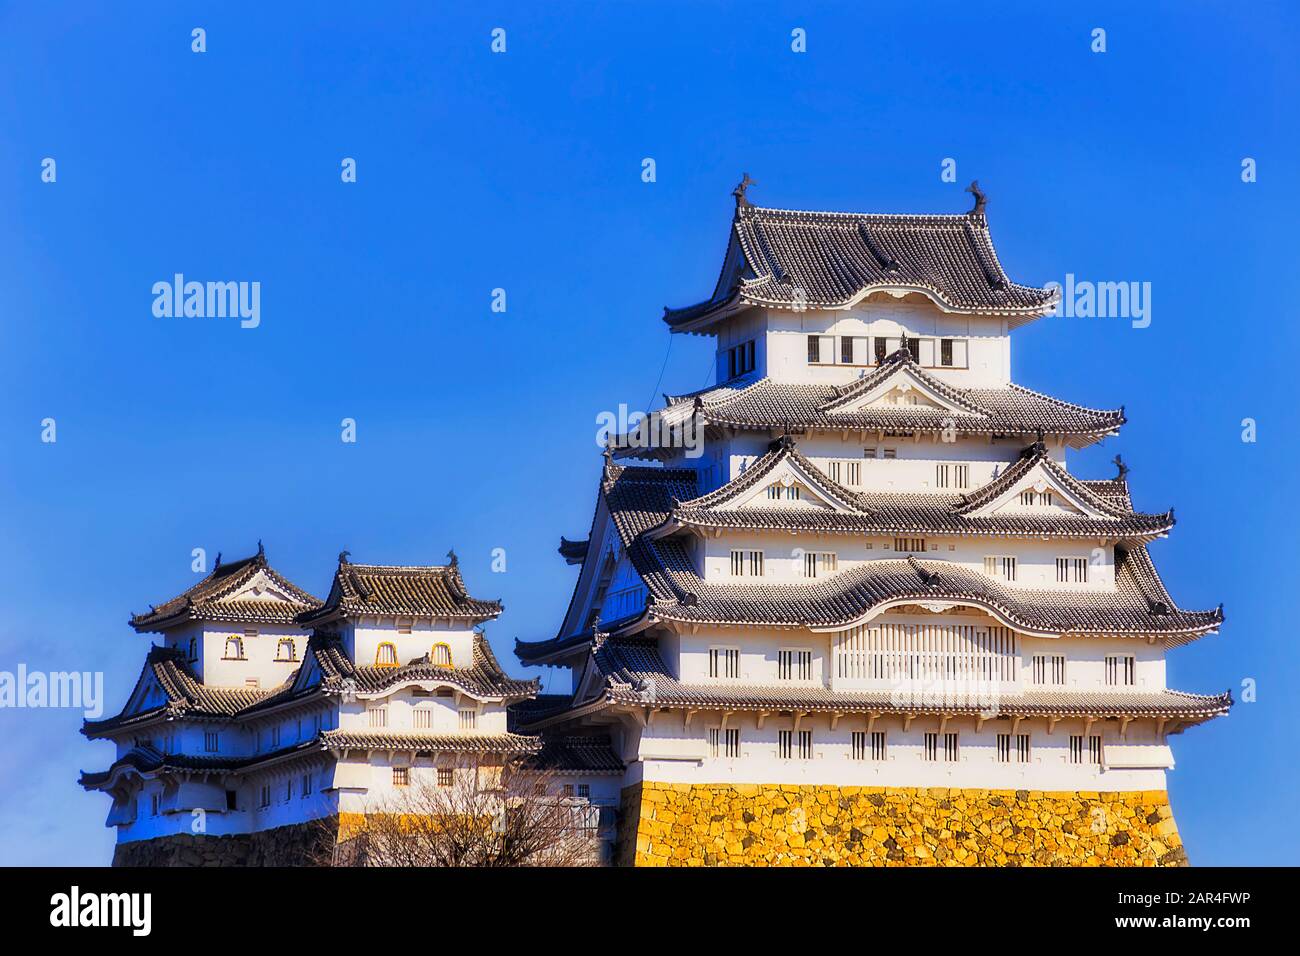 La principale fortezza del castello bianco in Giappone vicino alla città di Osaka contro il cielo blu in una luminosa luce solare - tradizionale architettura giapponese. Foto Stock